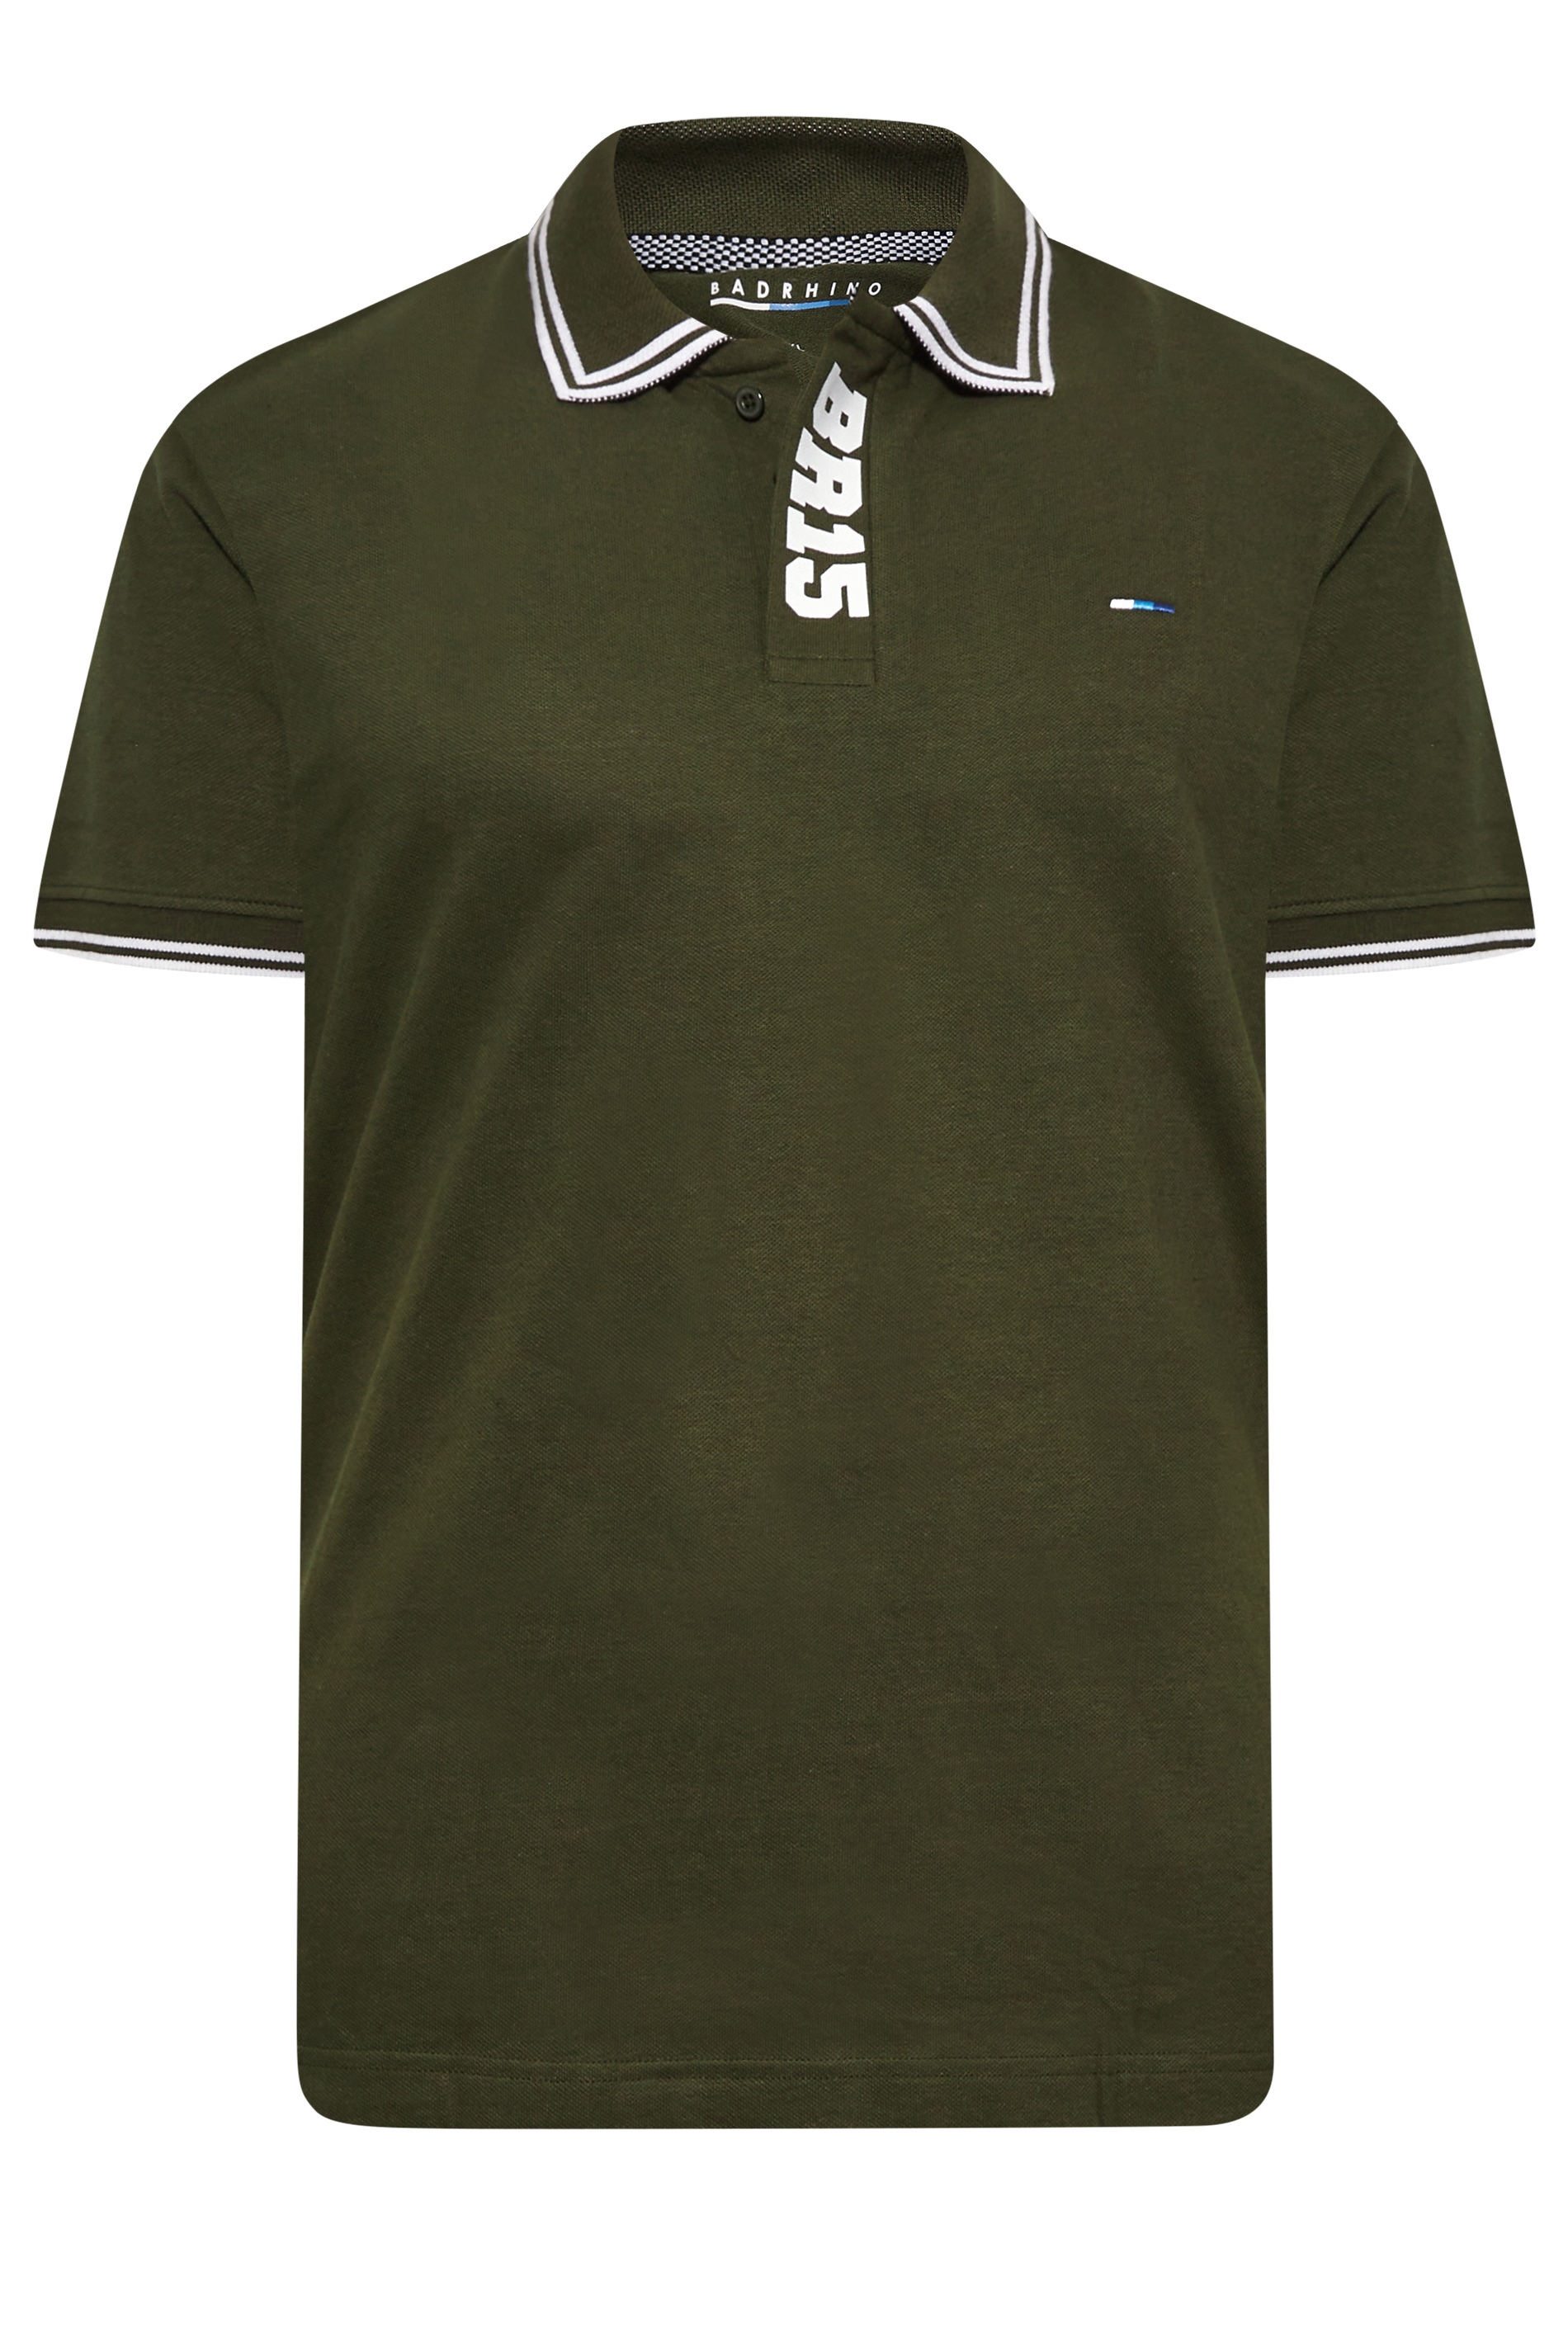 BadRhino Big & Tall Khaki Green BR15 Placket Polo Shirt | BadRhino 3